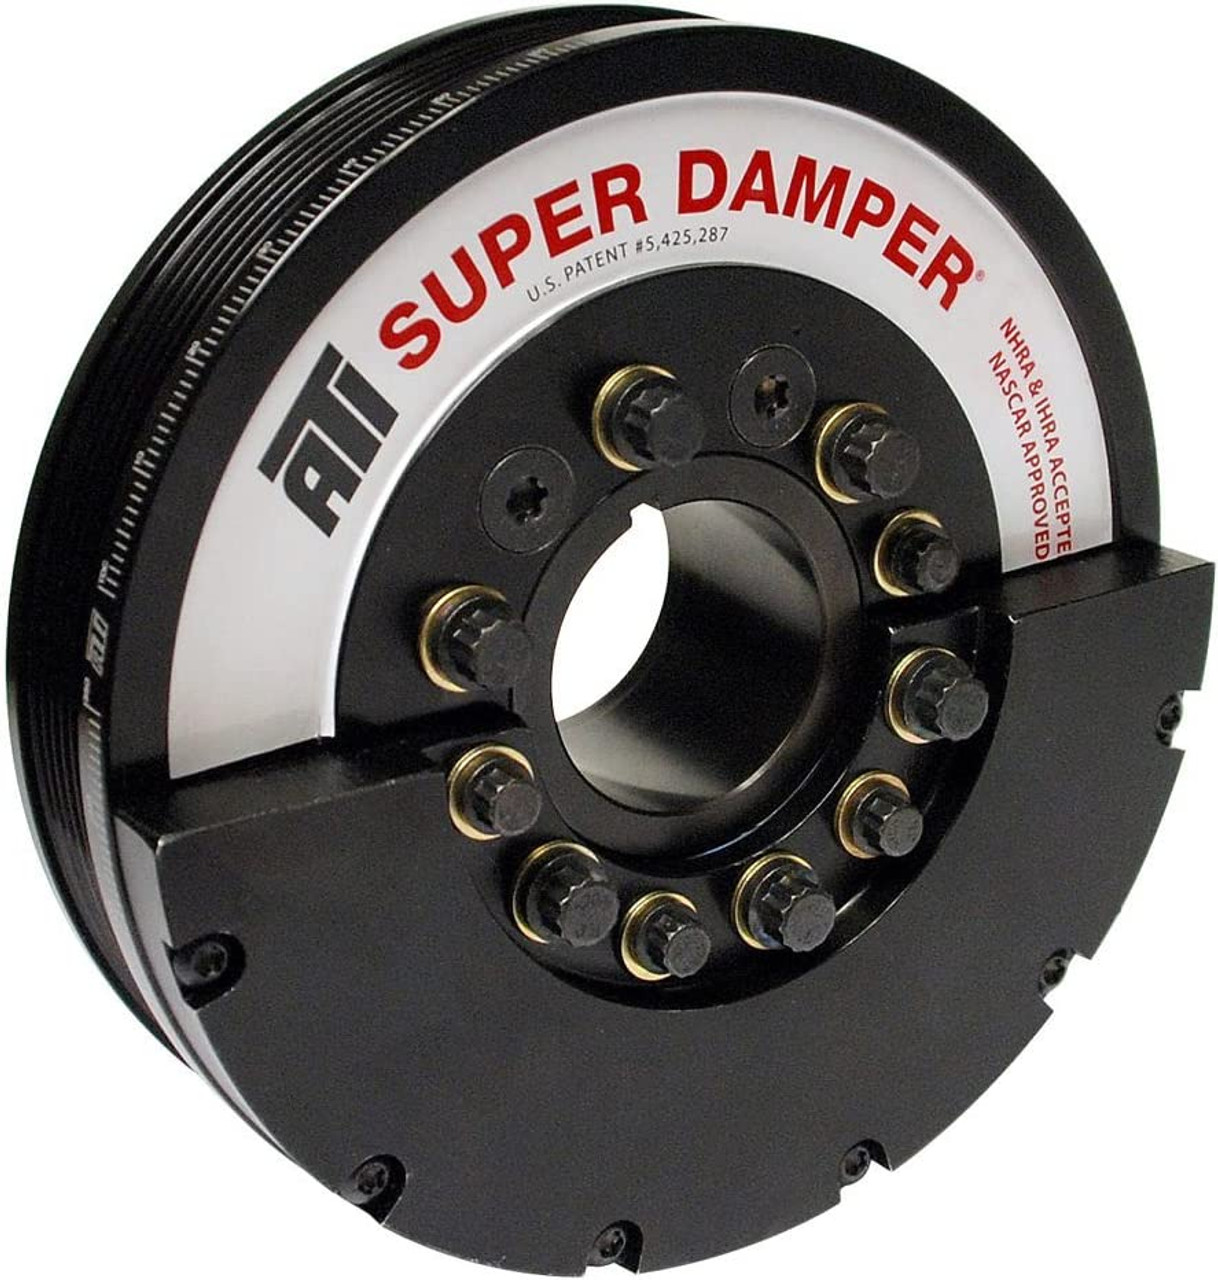 Ati Super Damper 917369